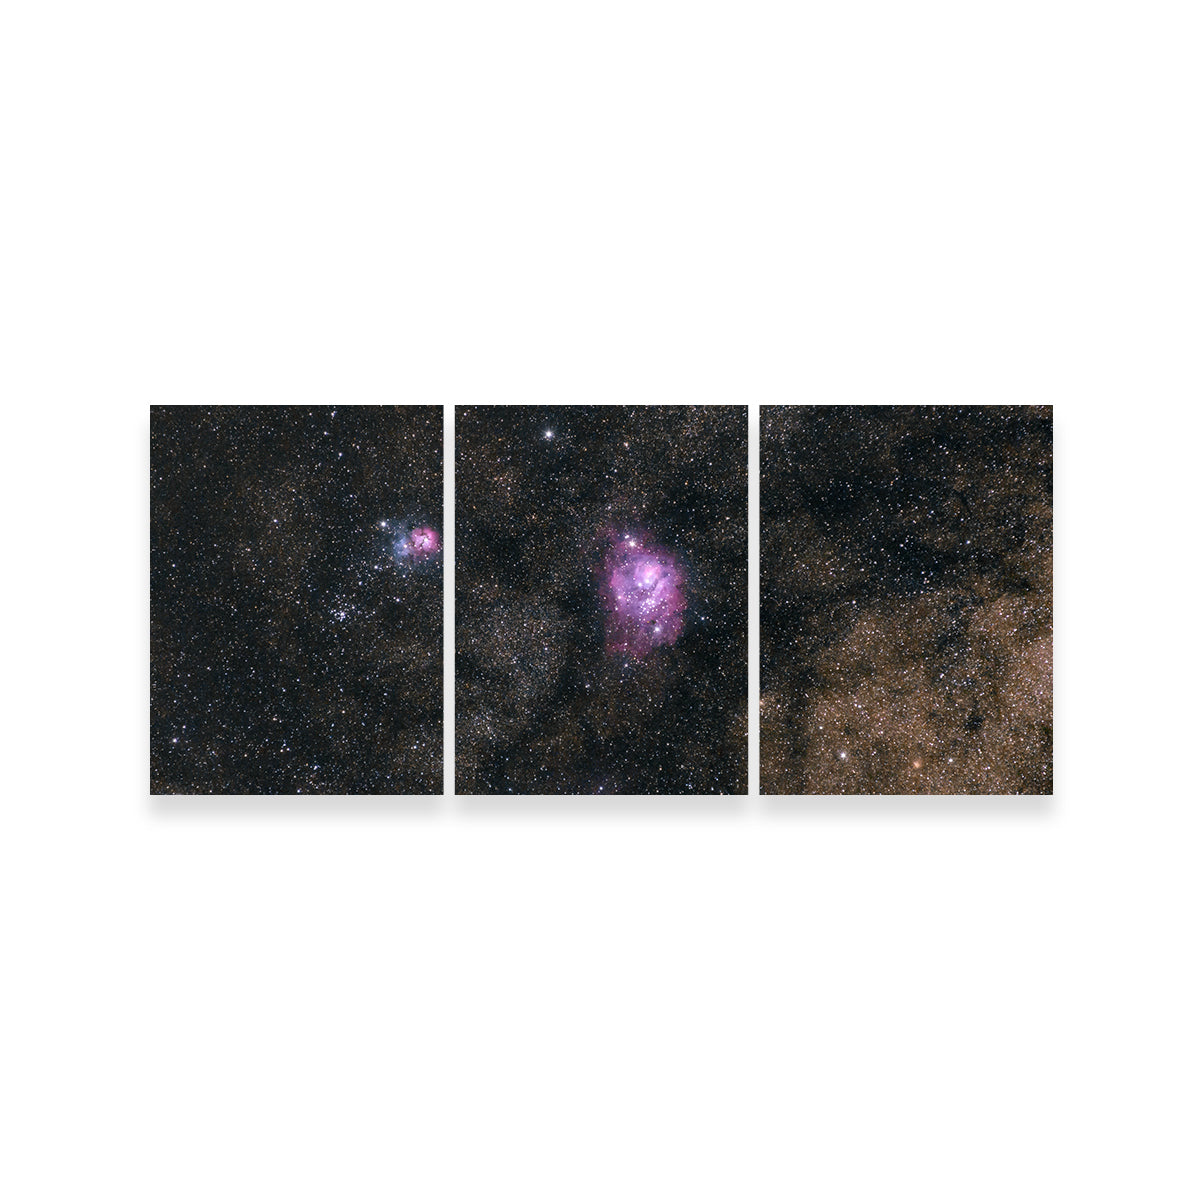 Lagoon and Trifid Nebula